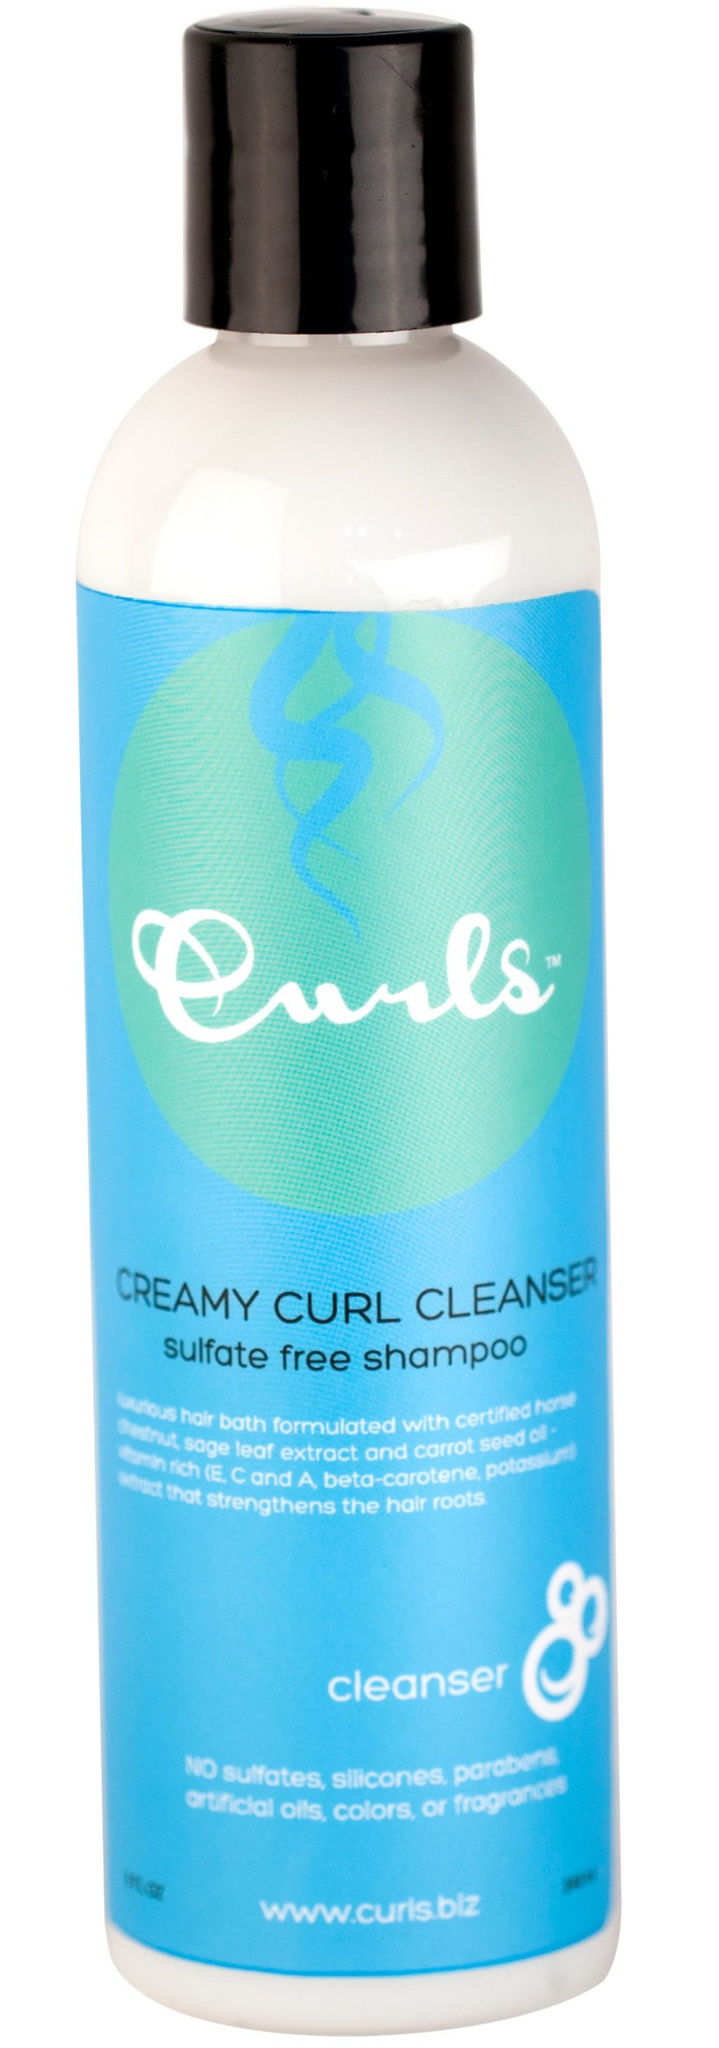 Curls Creamy Curl Cleanser